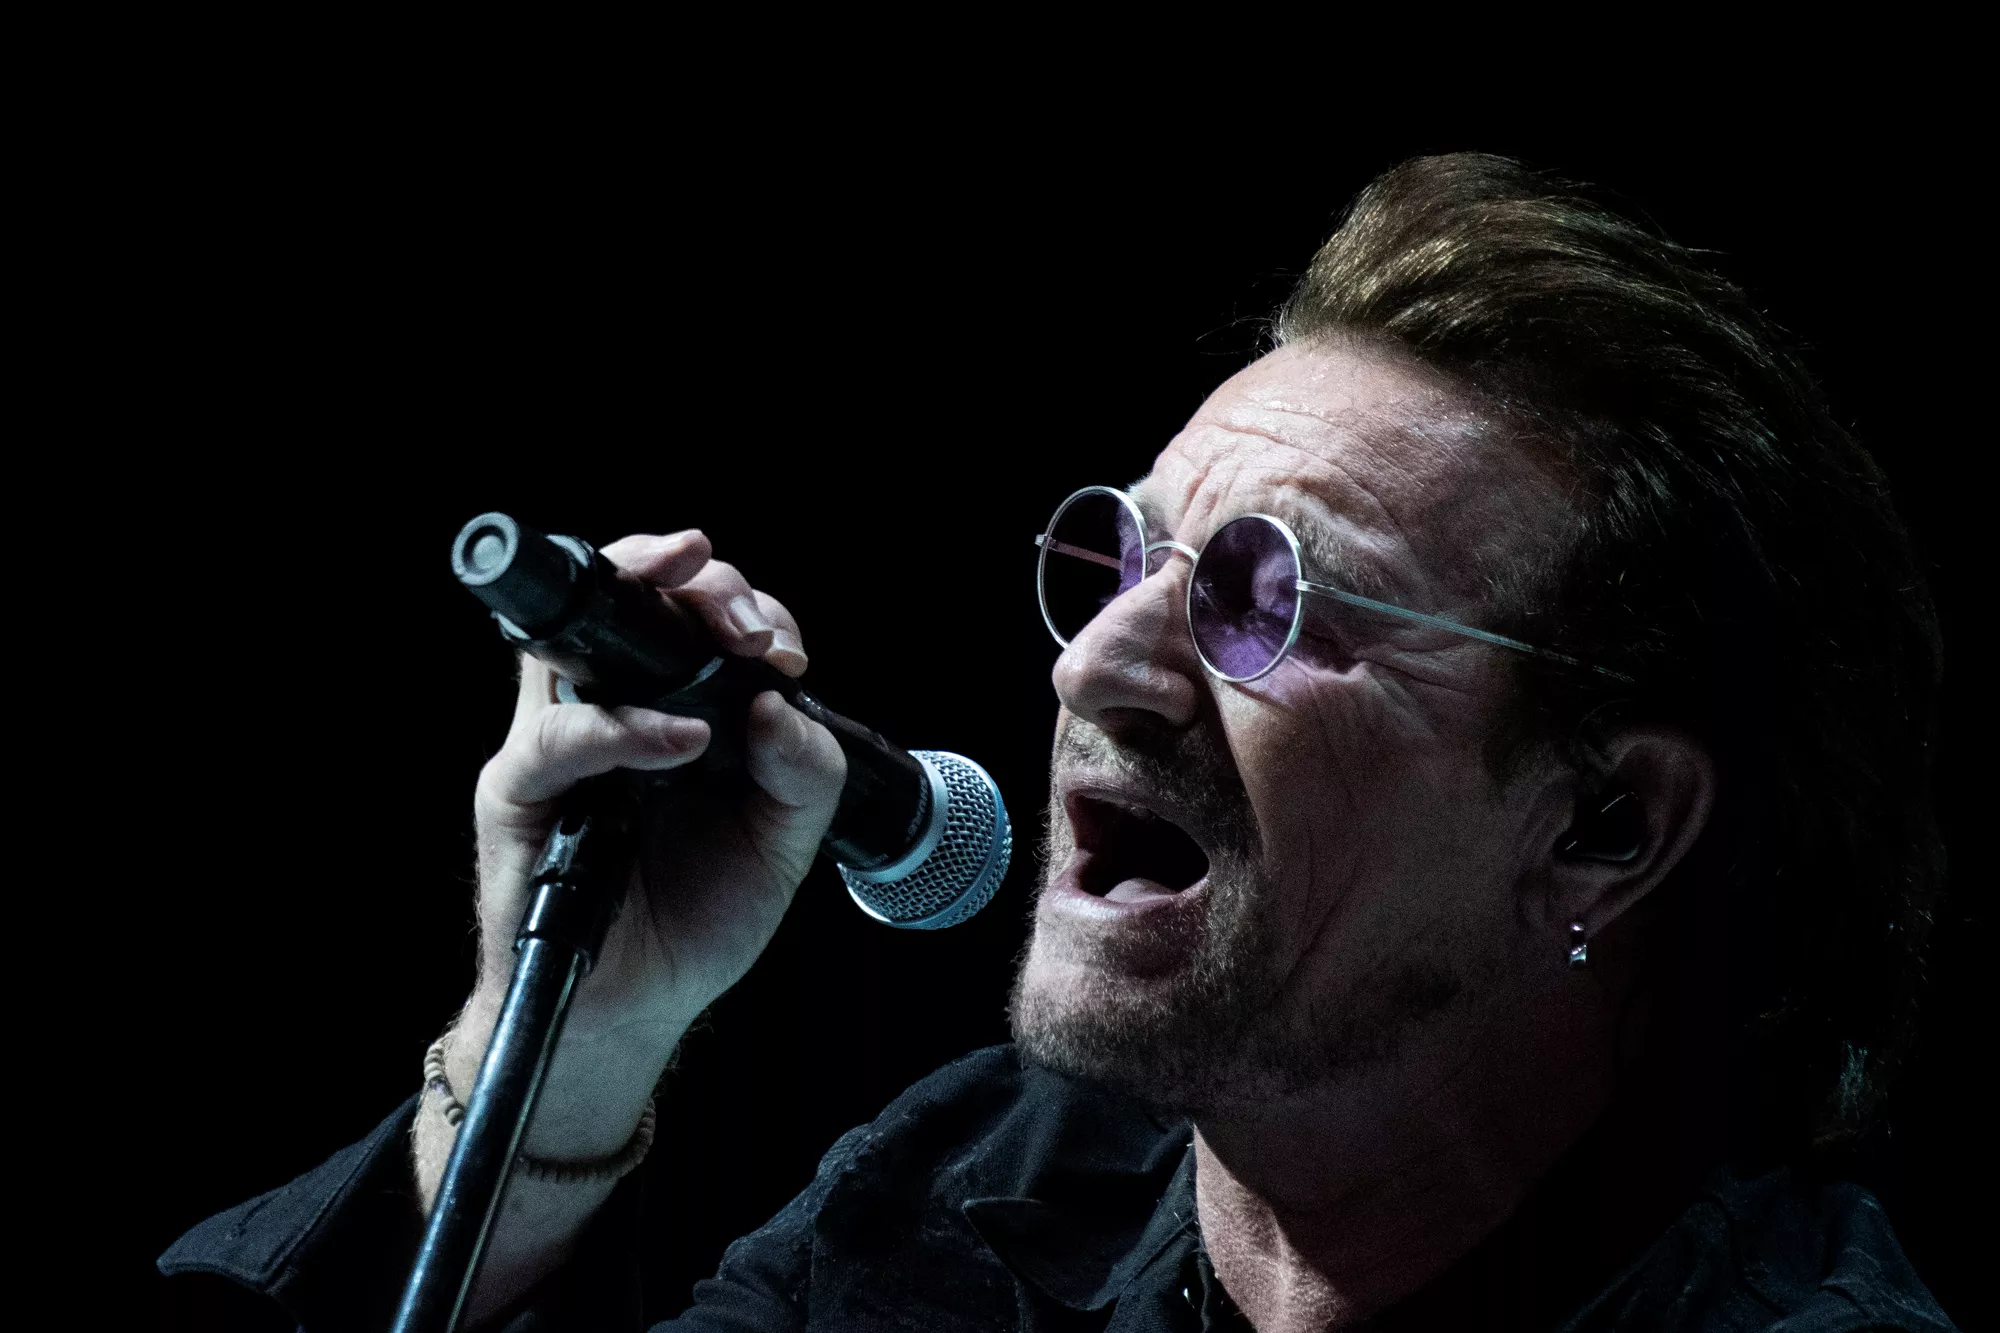 Bono fylder 60 og laver playliste: "Her er 60 sange, der reddede mit liv"